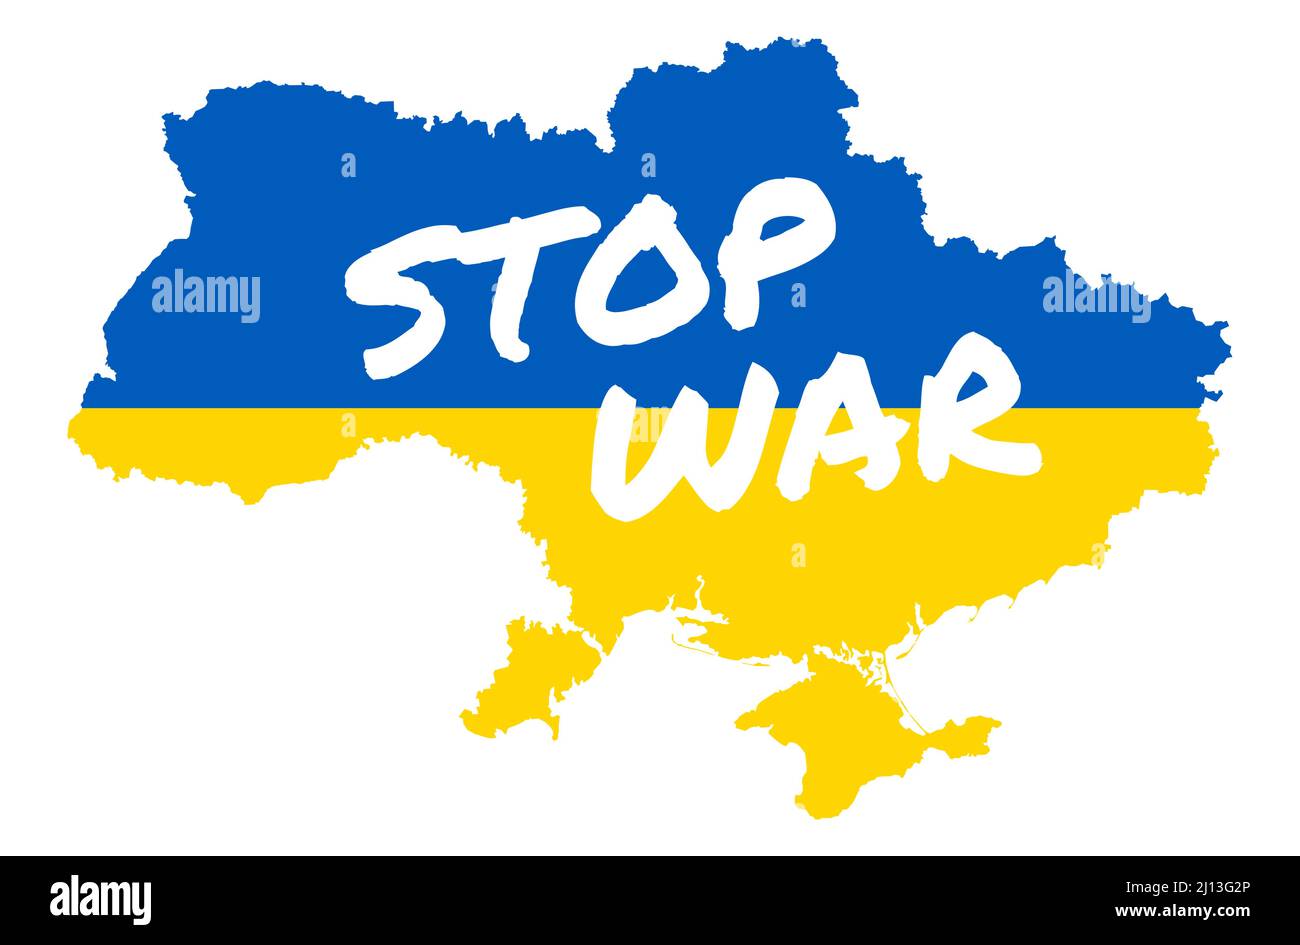 illustration vectorielle eps avec silhouette de pays ukraine avec couleurs de pays et texte blanc STOP WAR for Conflict with russia 2022 Illustration de Vecteur